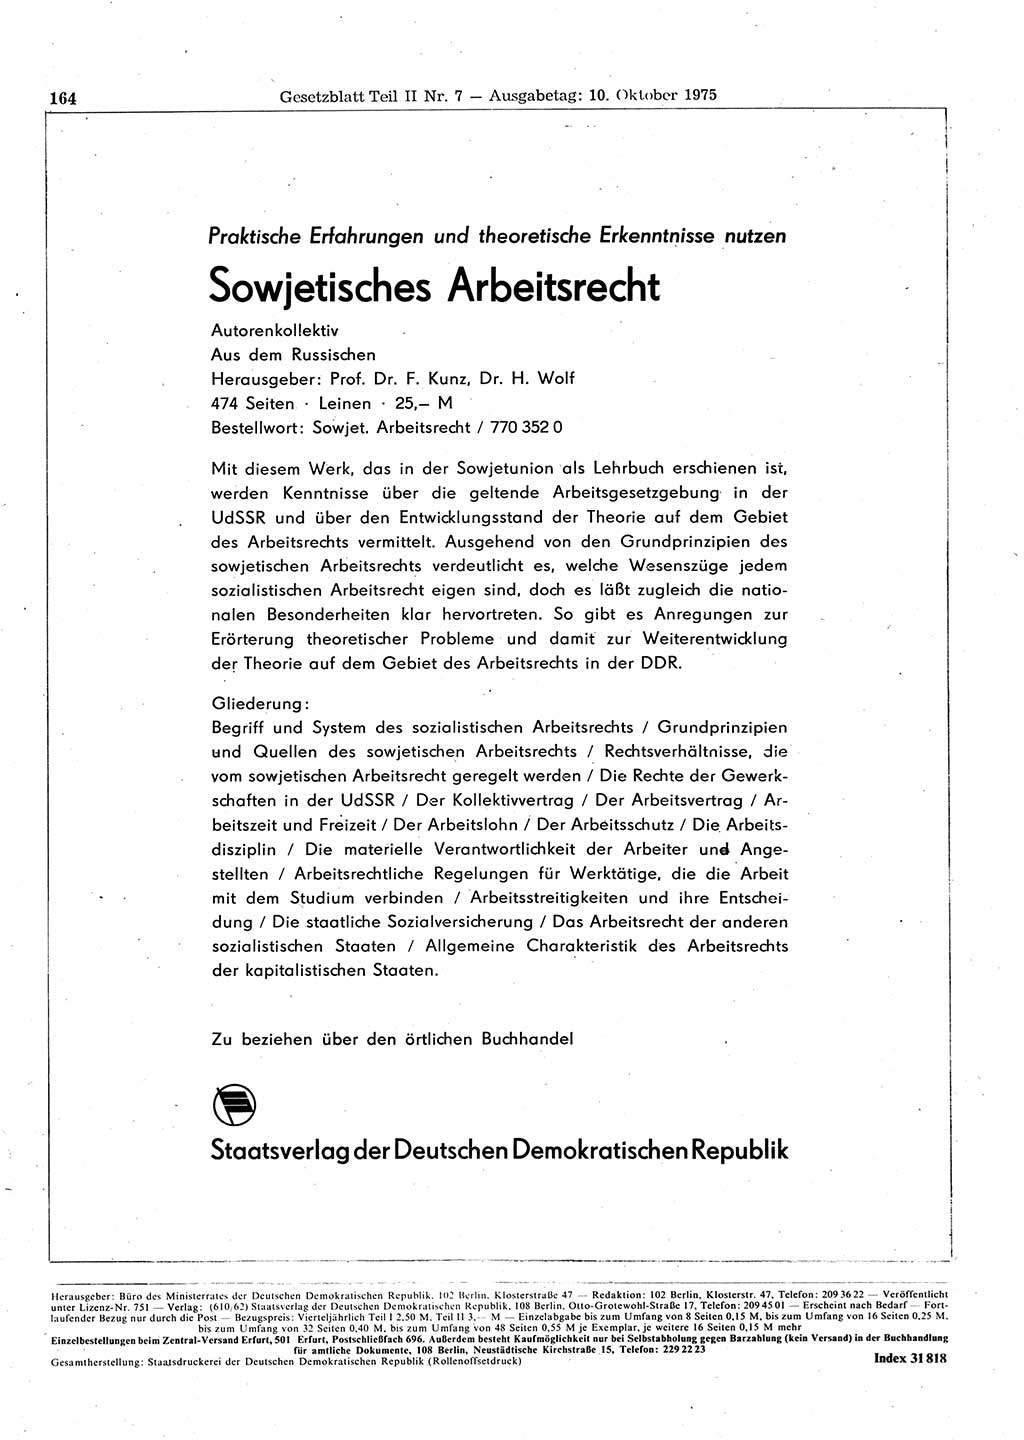 Gesetzblatt (GBl.) der Deutschen Demokratischen Republik (DDR) Teil ⅠⅠ 1975, Seite 164 (GBl. DDR ⅠⅠ 1975, S. 164)